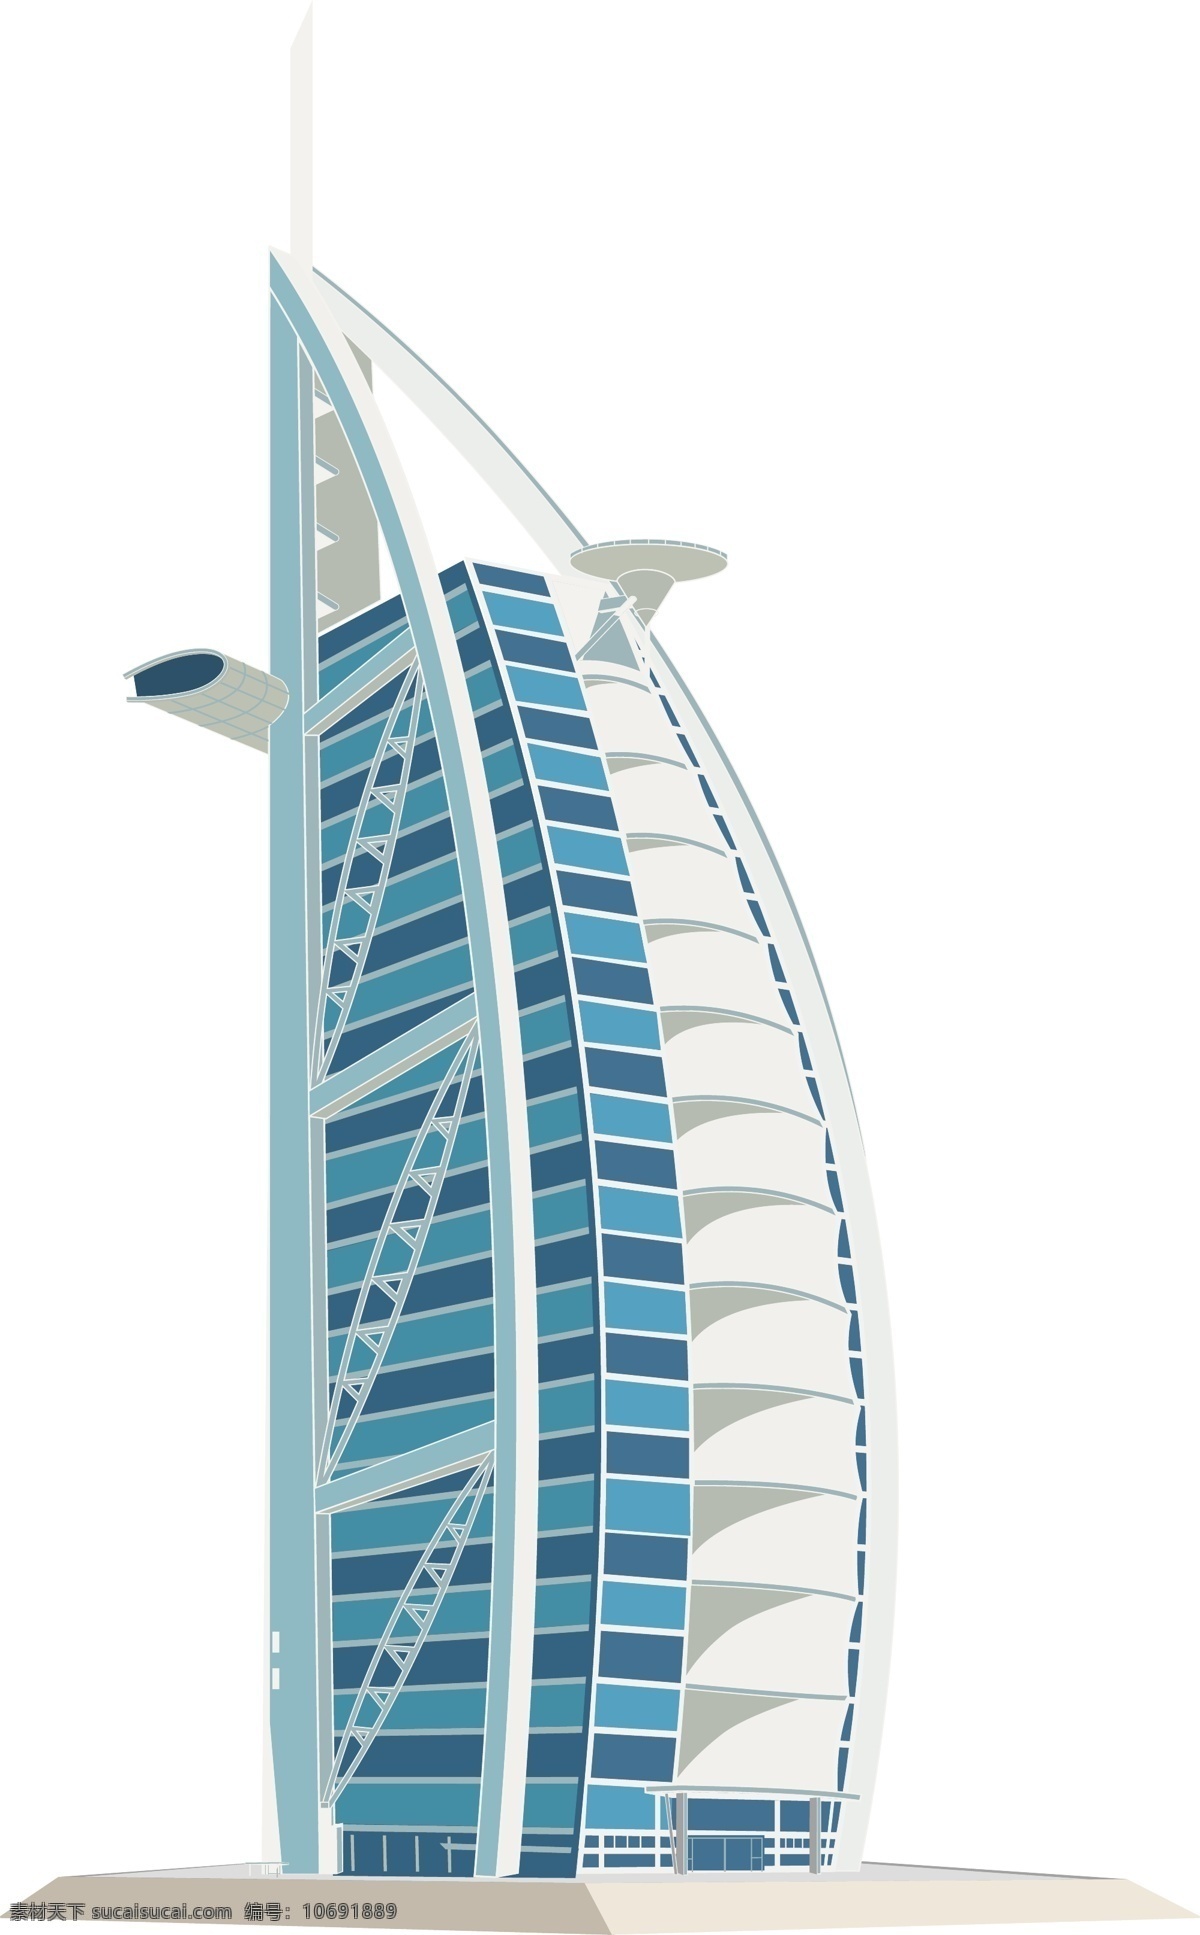 迪拜 帆船酒店 矢量 标志性建筑